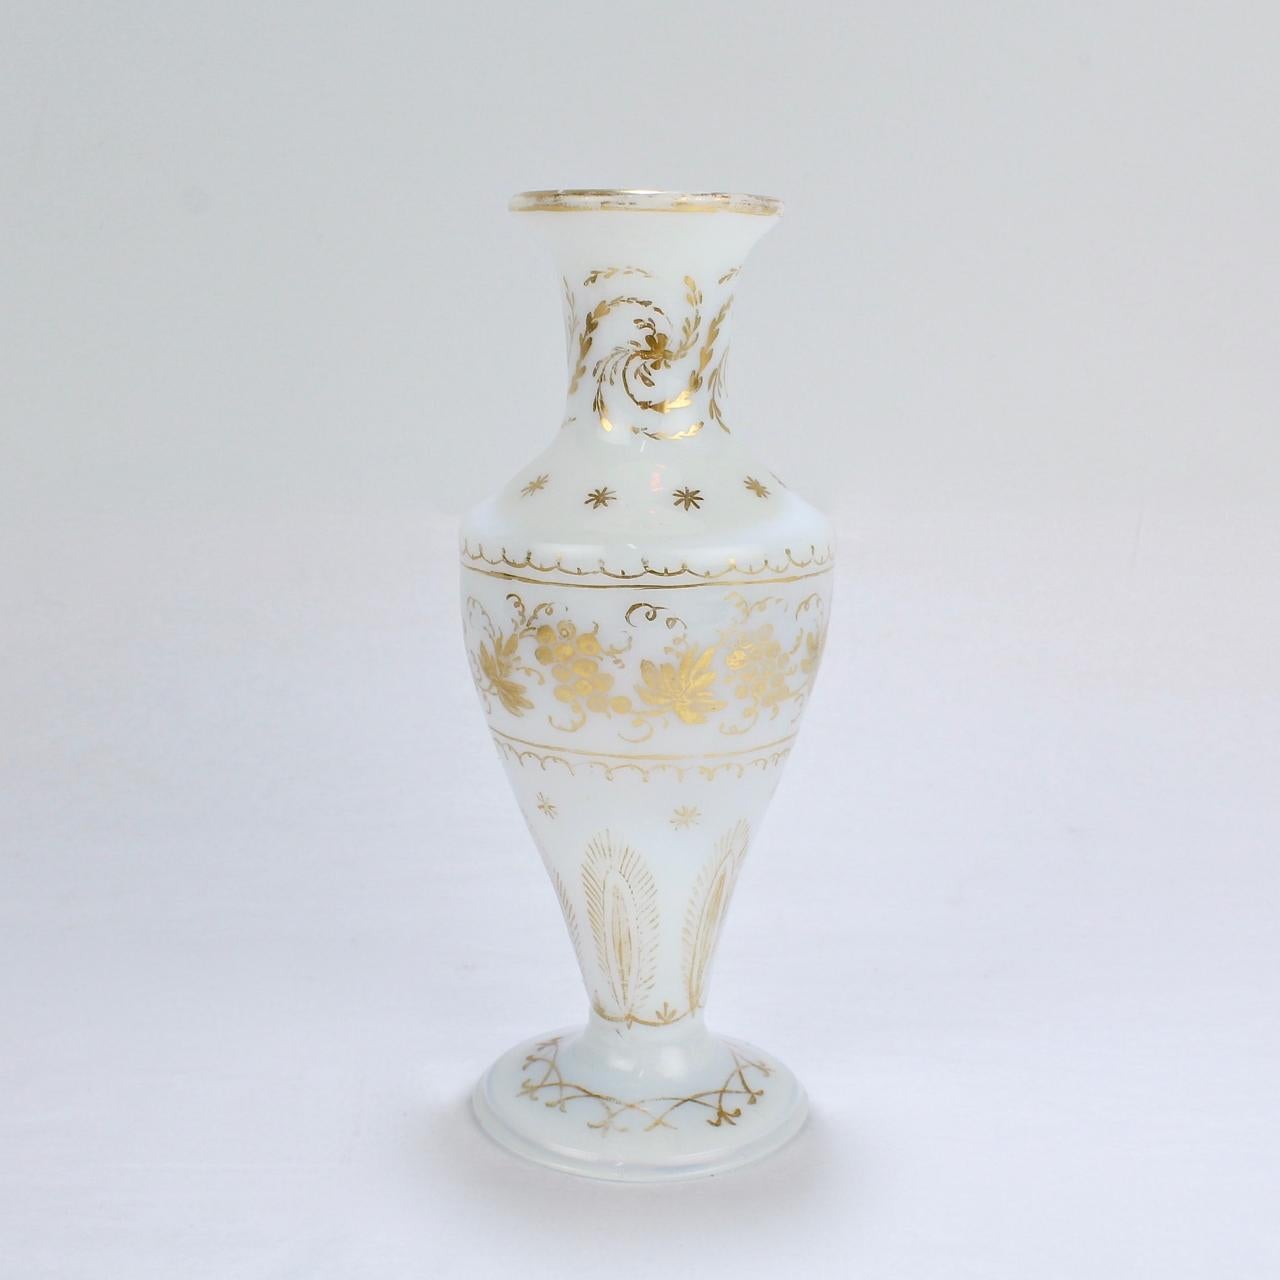 Un beau et rare vase en verre blanc opaque décoré à la manière de James Giles.

D'origine anglaise ou éventuellement continentale. (Milchglas de Bohème ou allemand).

La base présente une marque de pontilage grossière.

Hauteur : environ 7 1/4